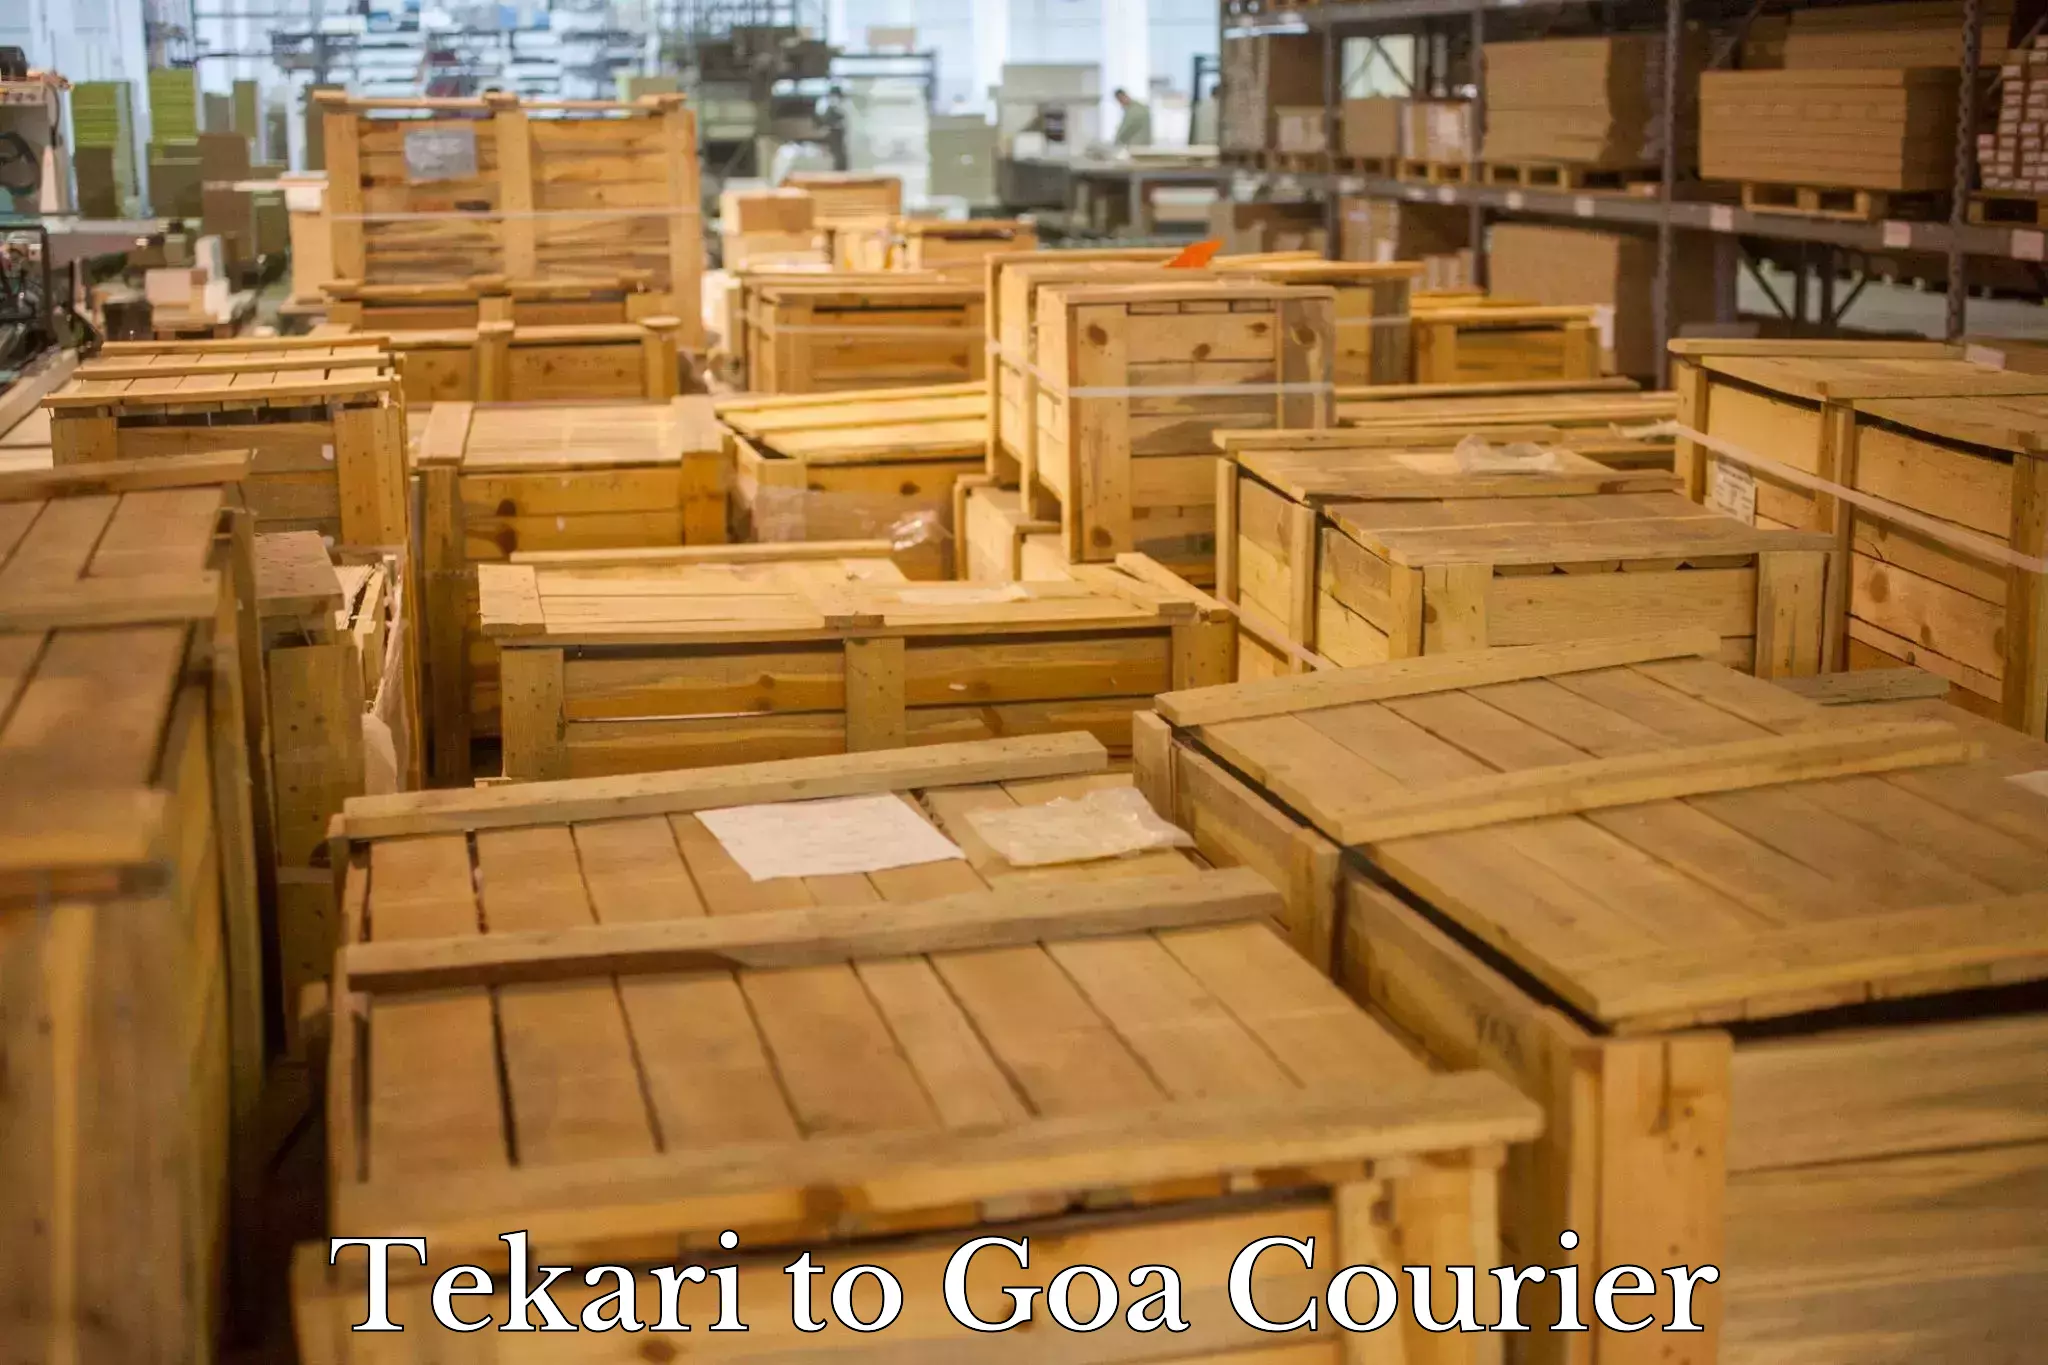 Door-to-door freight service Tekari to Goa